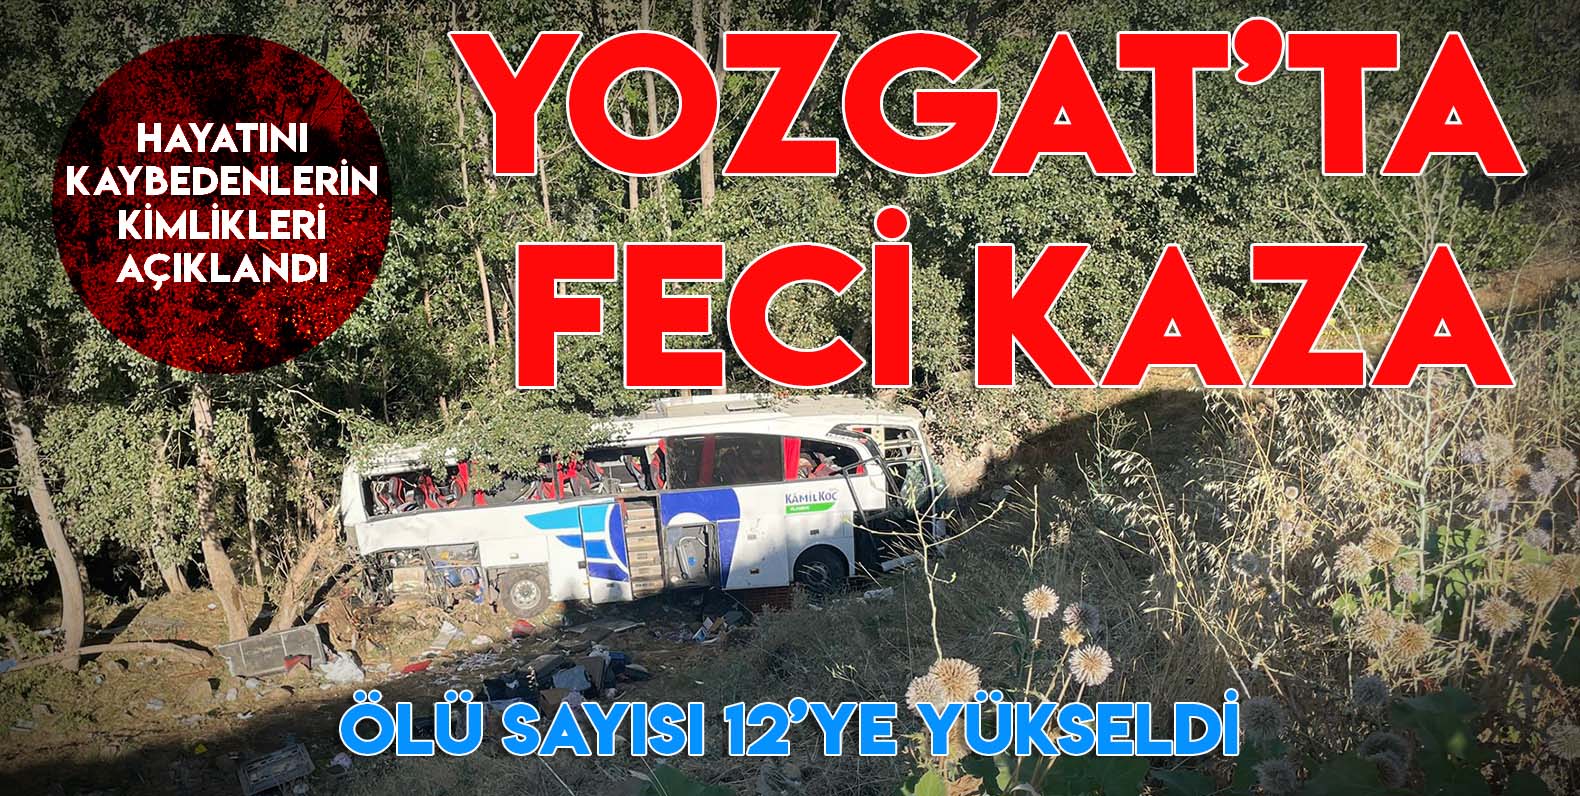 Yozgat'ta feci kaza, ölü sayısı 12'ye yükseldi